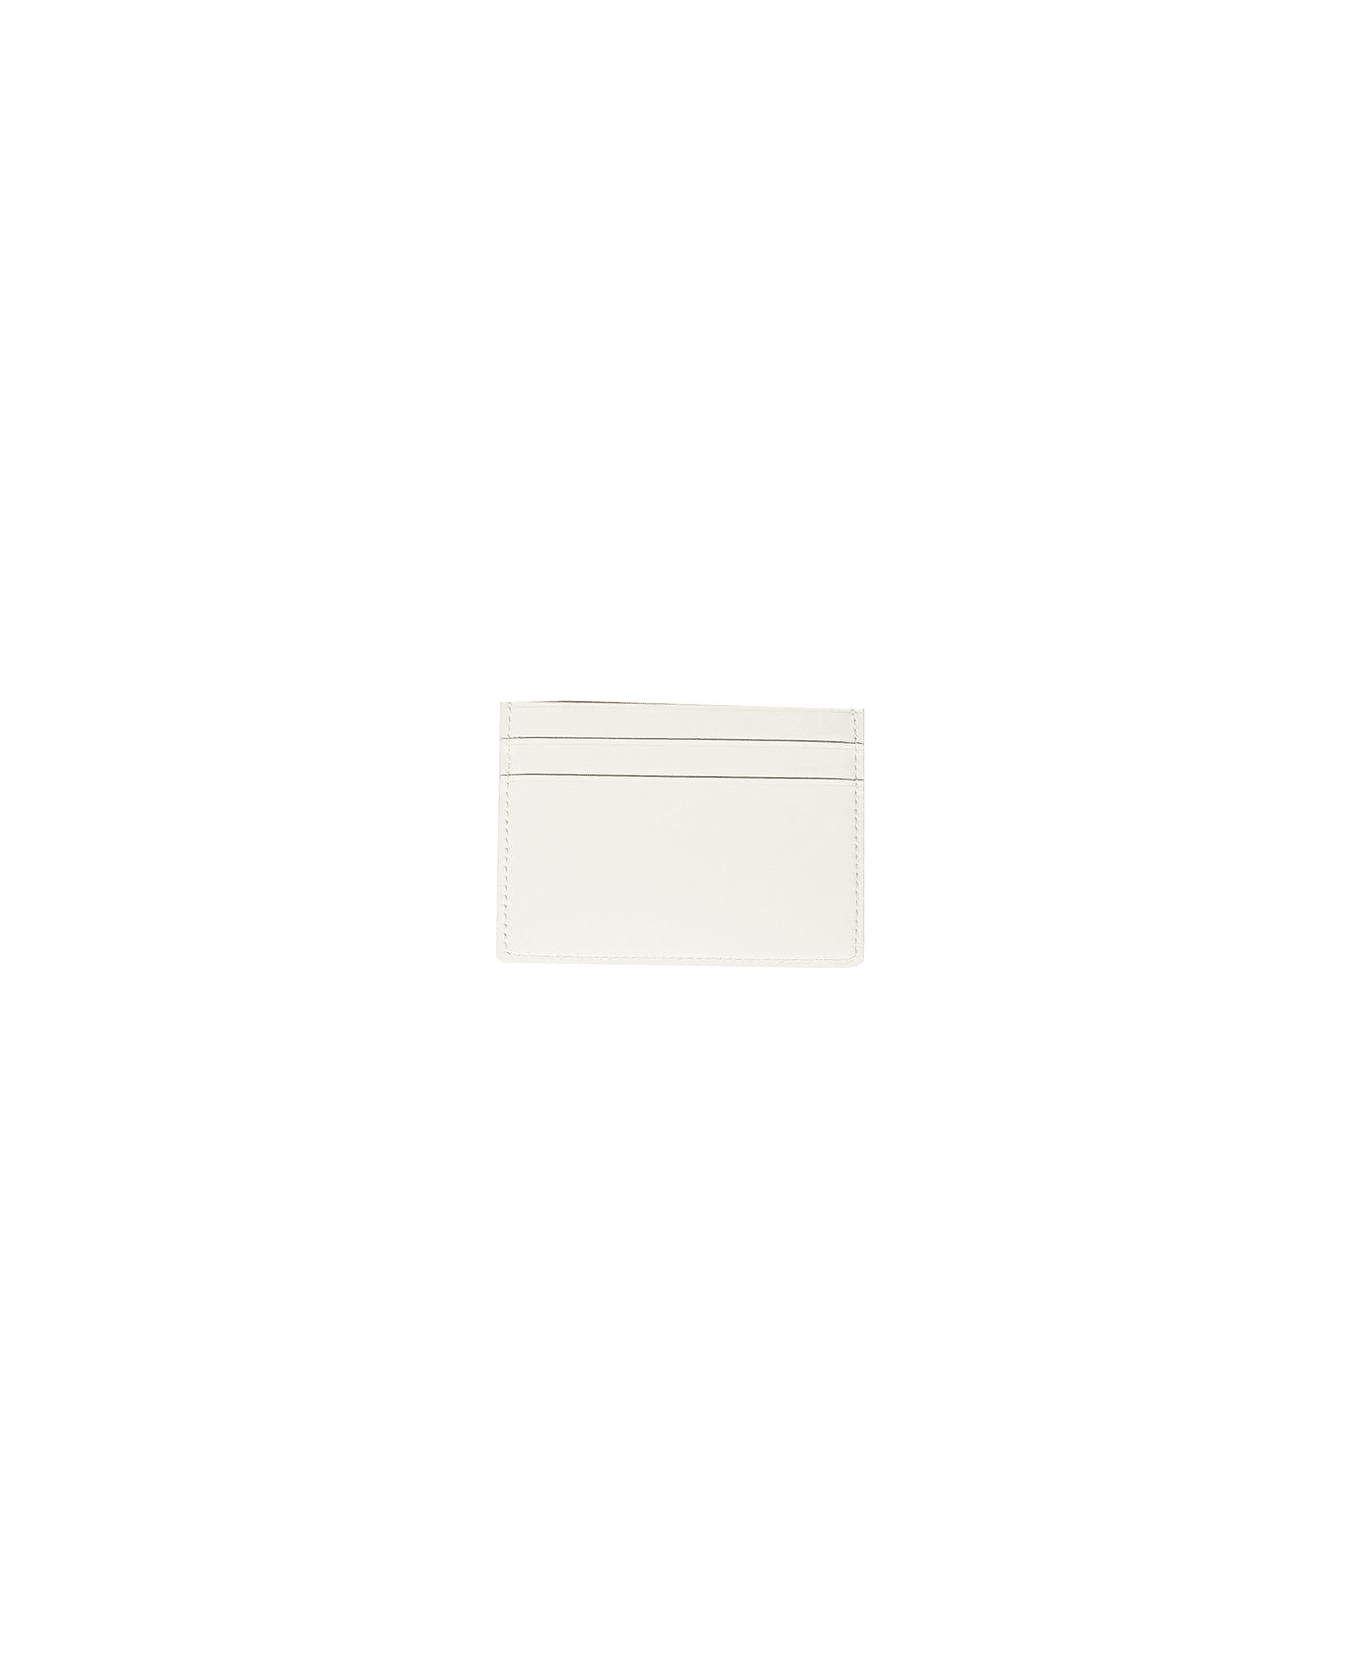 Jil Sander Logo-stamp Cardholder - Bianco